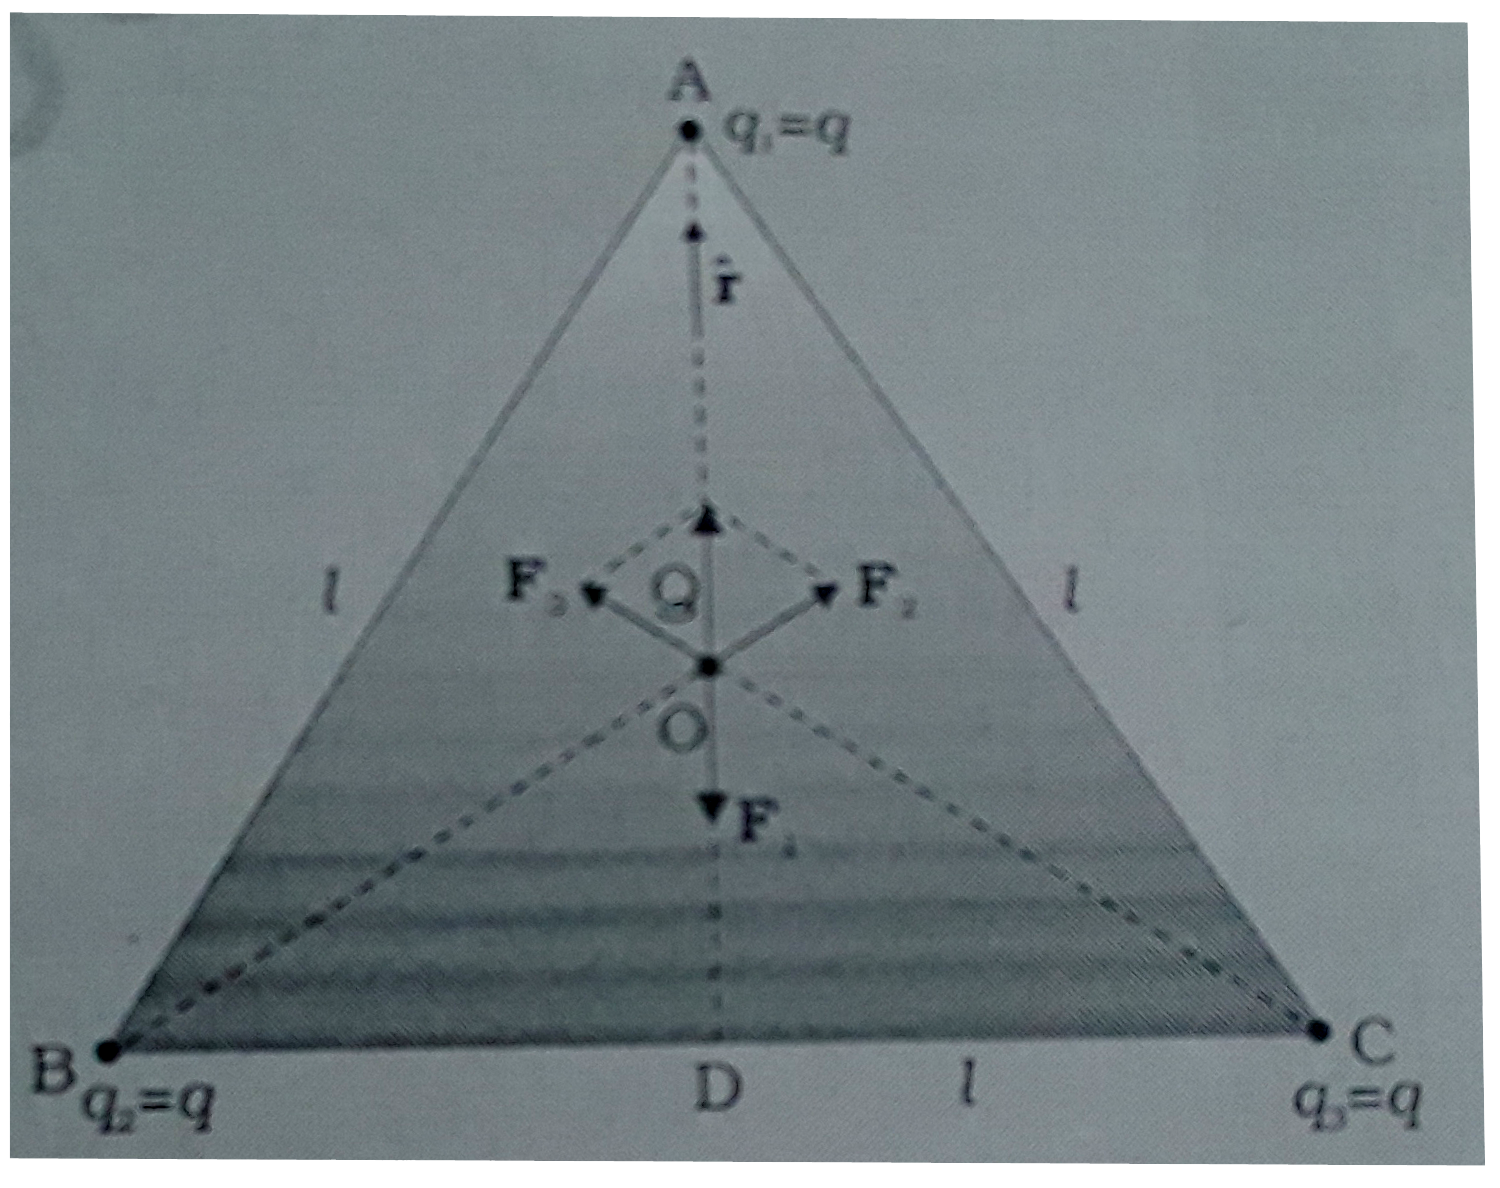 तीन  आवेशों  q(1), q(2),q(3)  पर विचार कीजिये जिनमे प्रत्येक q  के बराबर है तथा  l भुजा वाले समबाहु त्रिभुज के शीर्षो पर स्थिर है । त्रिभुज के केन्द्रक पर चित्र  1.9 में दर्शाए अनुसार स्थिर आवेश Q (जो q का सजातीय) पर कितन परिणाम बल लग रहा है ?